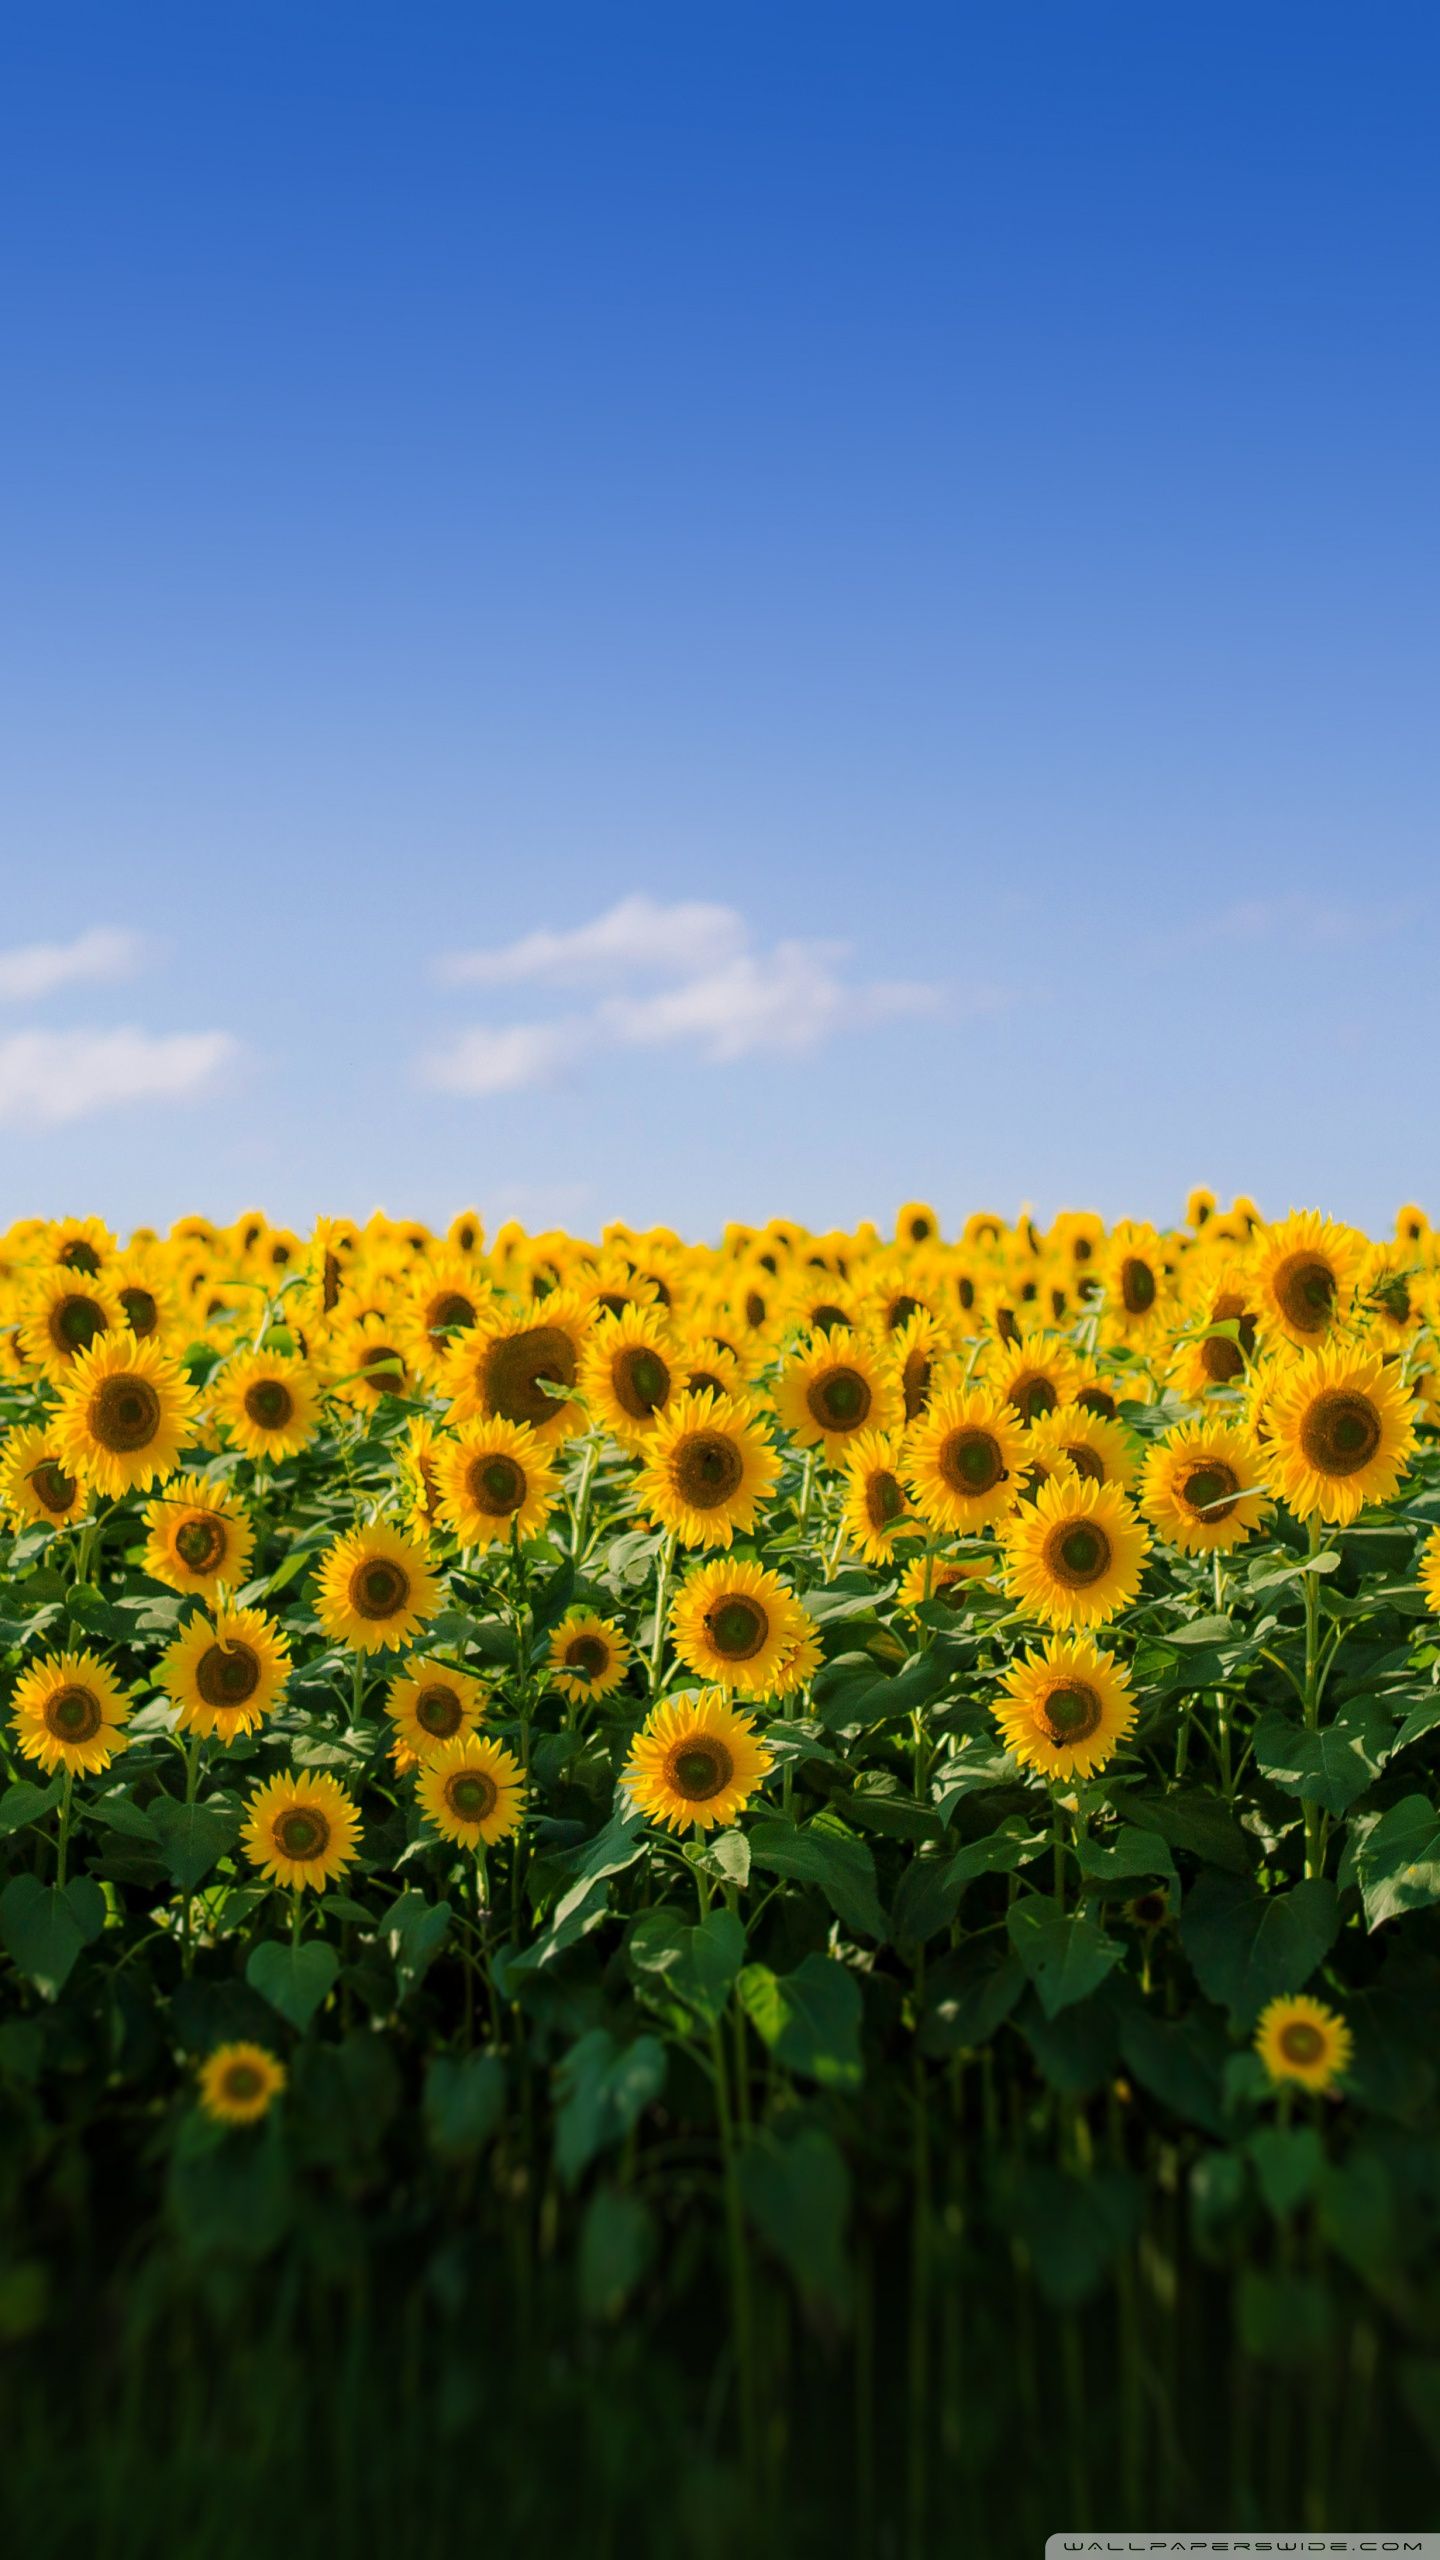 Sunflowers under the blue sky wallpaper 1920x1200 - Sunflower